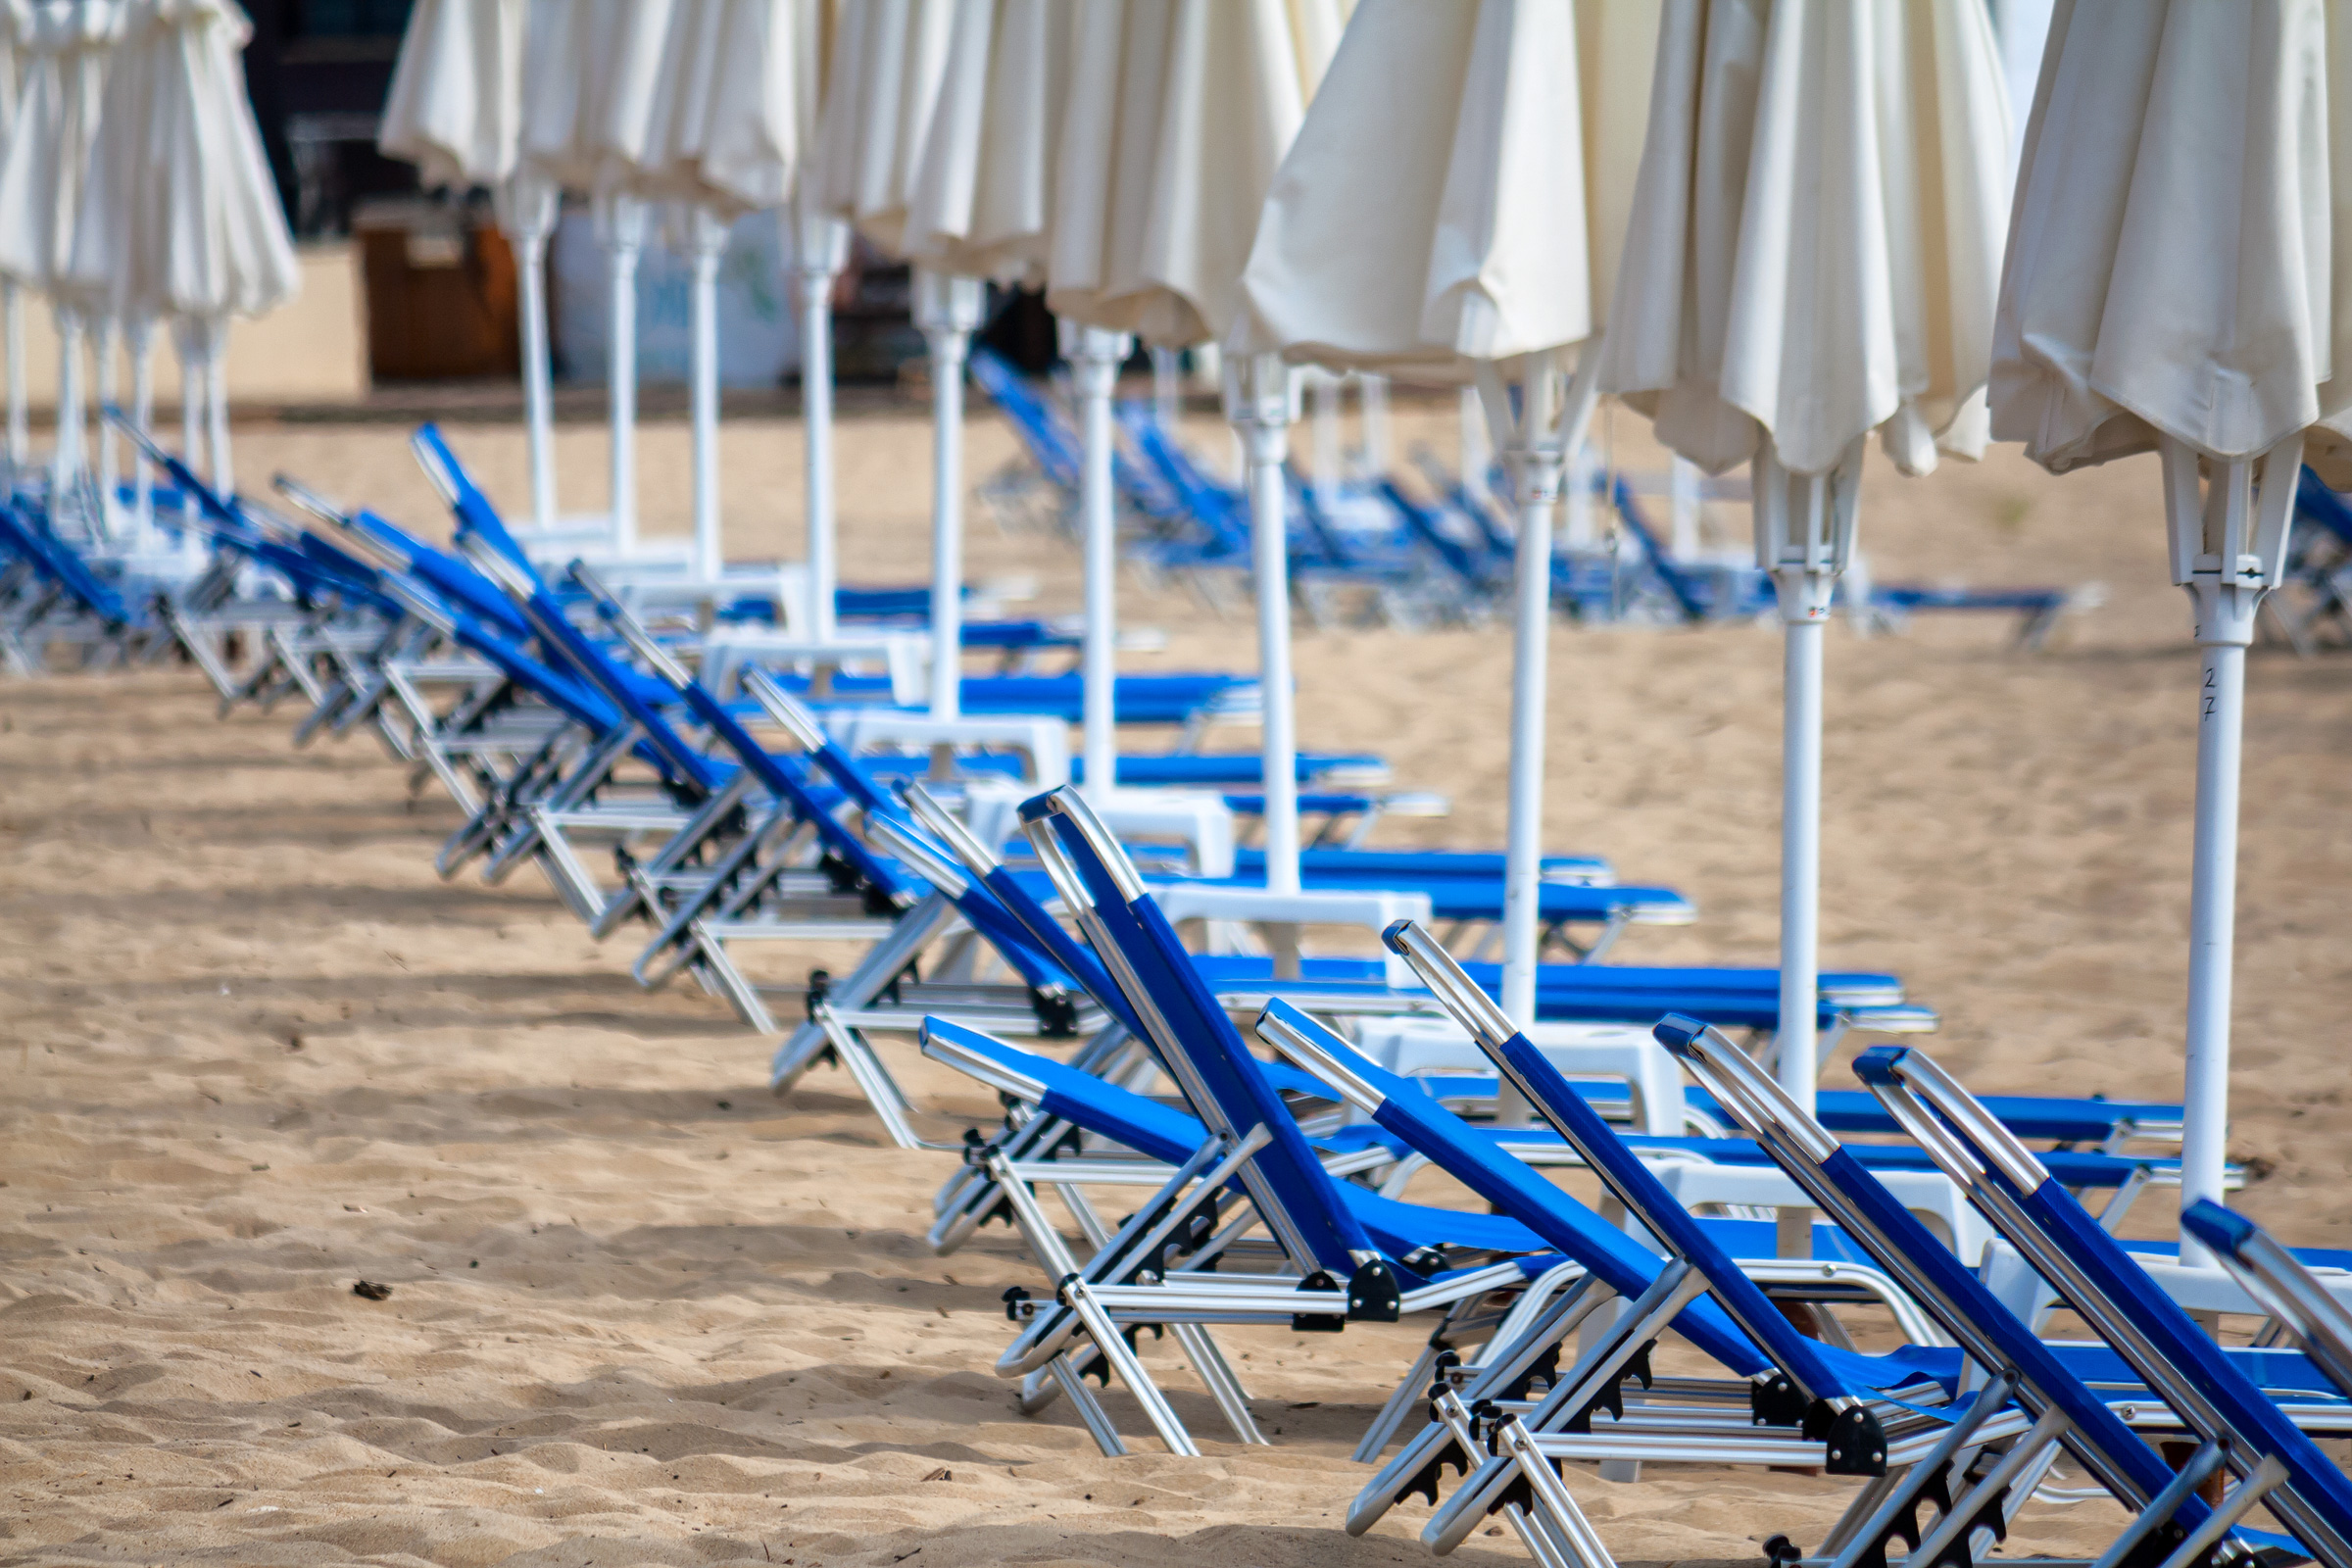 Blue beach deckchairs and umbrellas